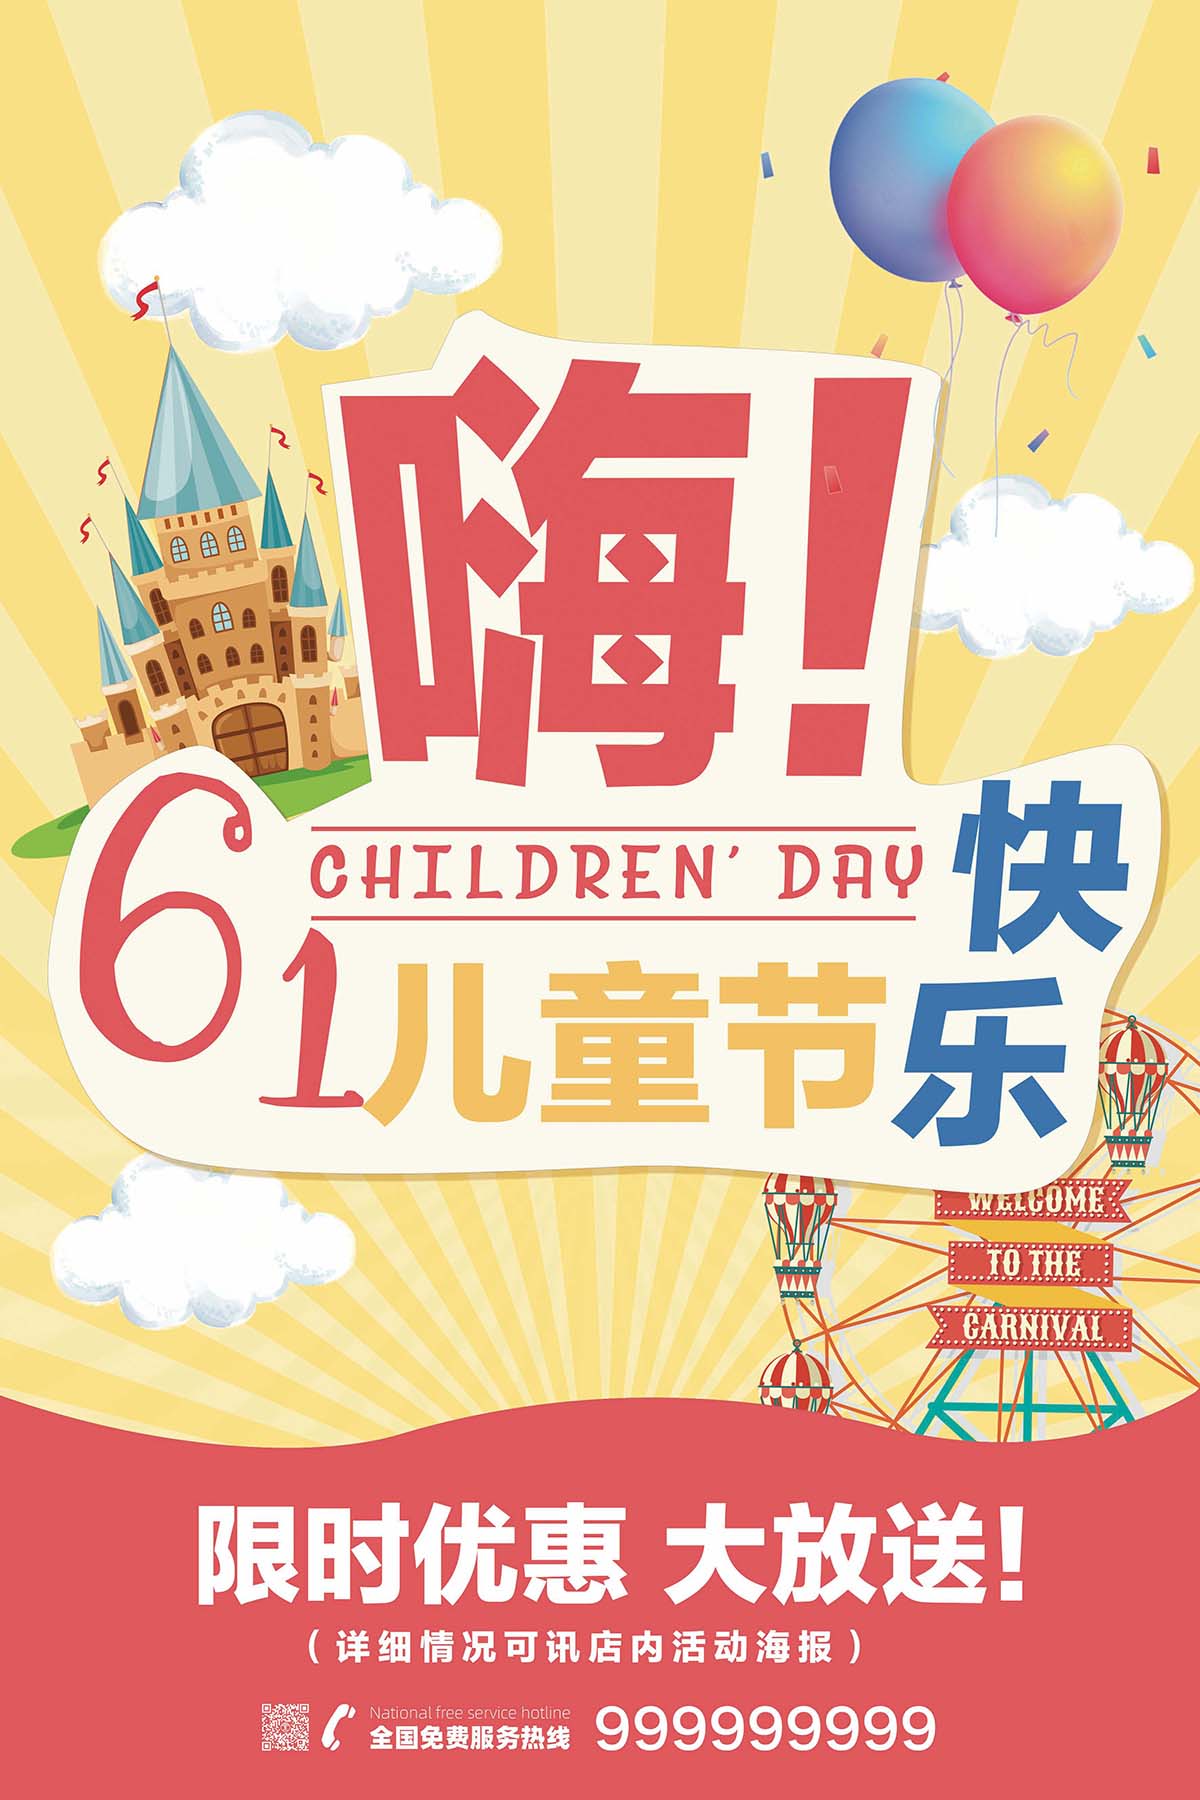 61六一儿童节大放送卡通手绘海报设计PSD源文件